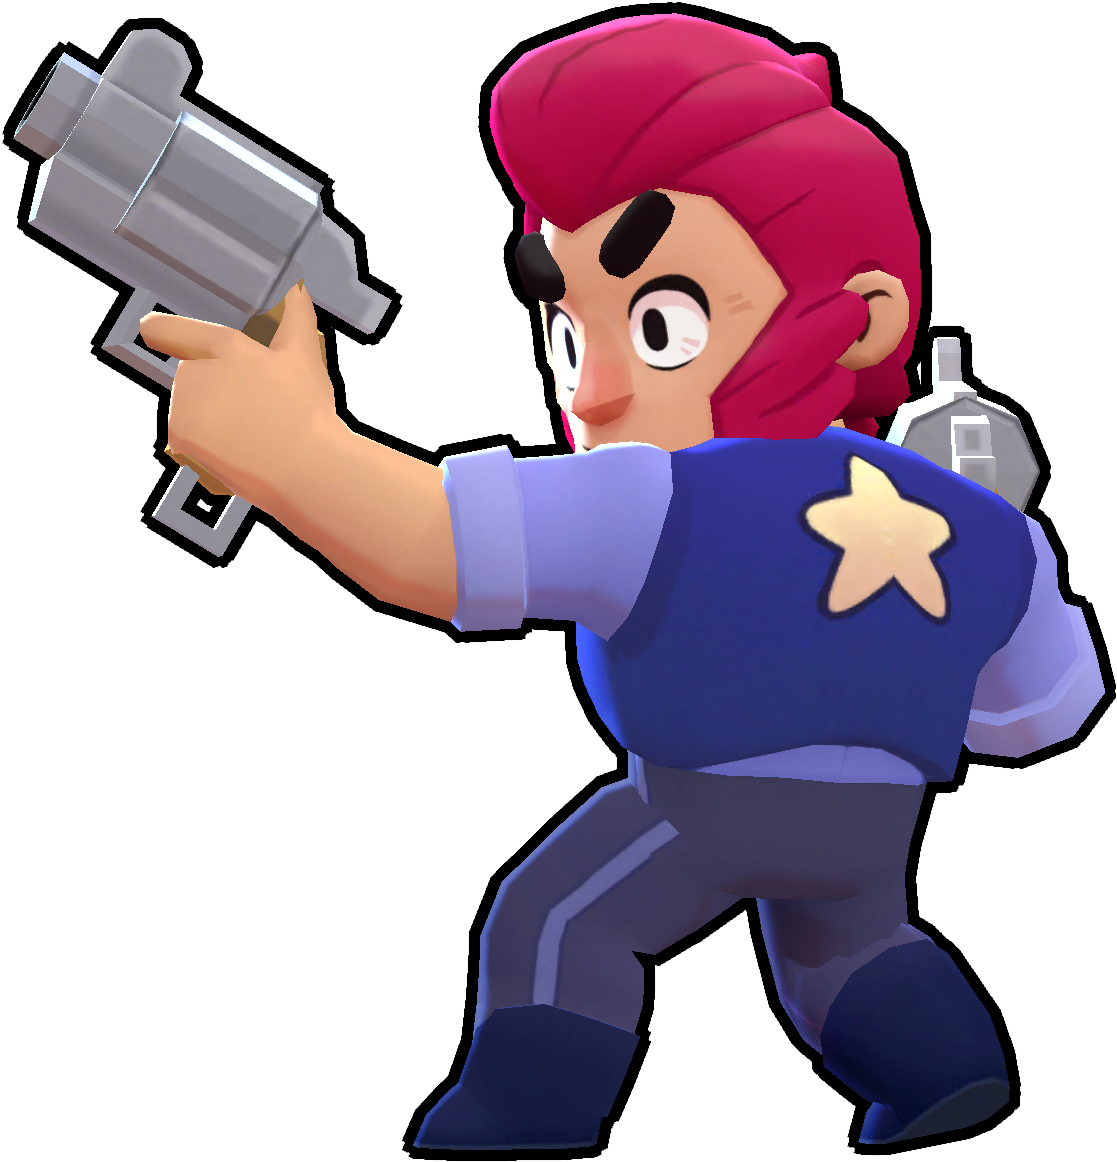 A Cartoon Character Holding A Gun